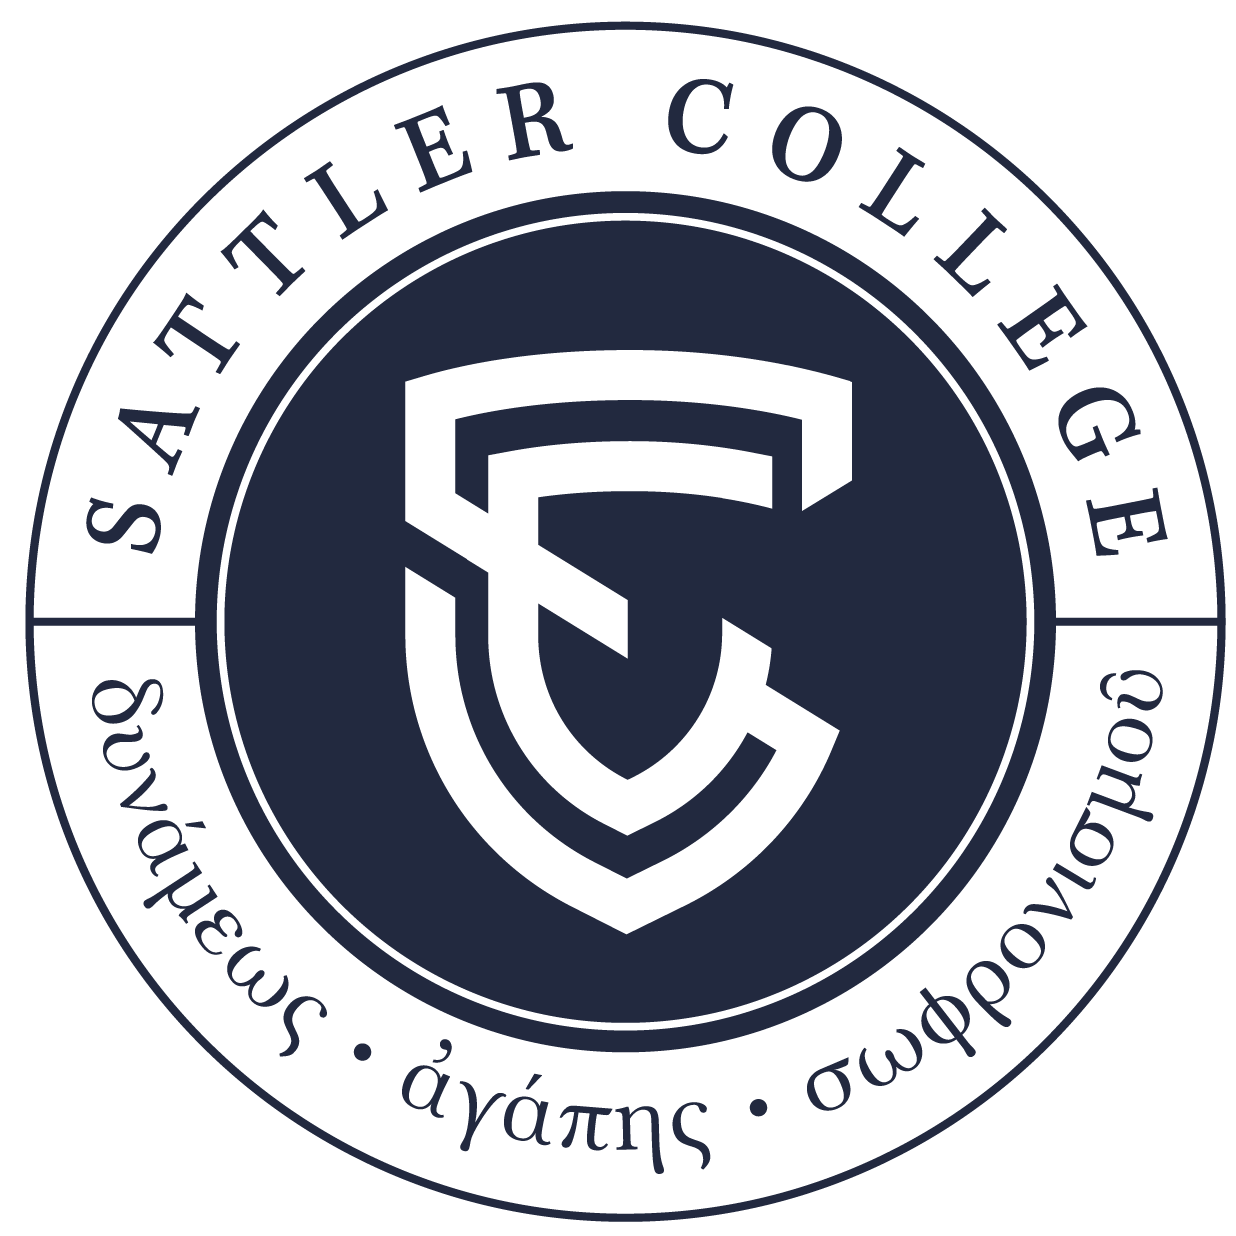 Sattler College